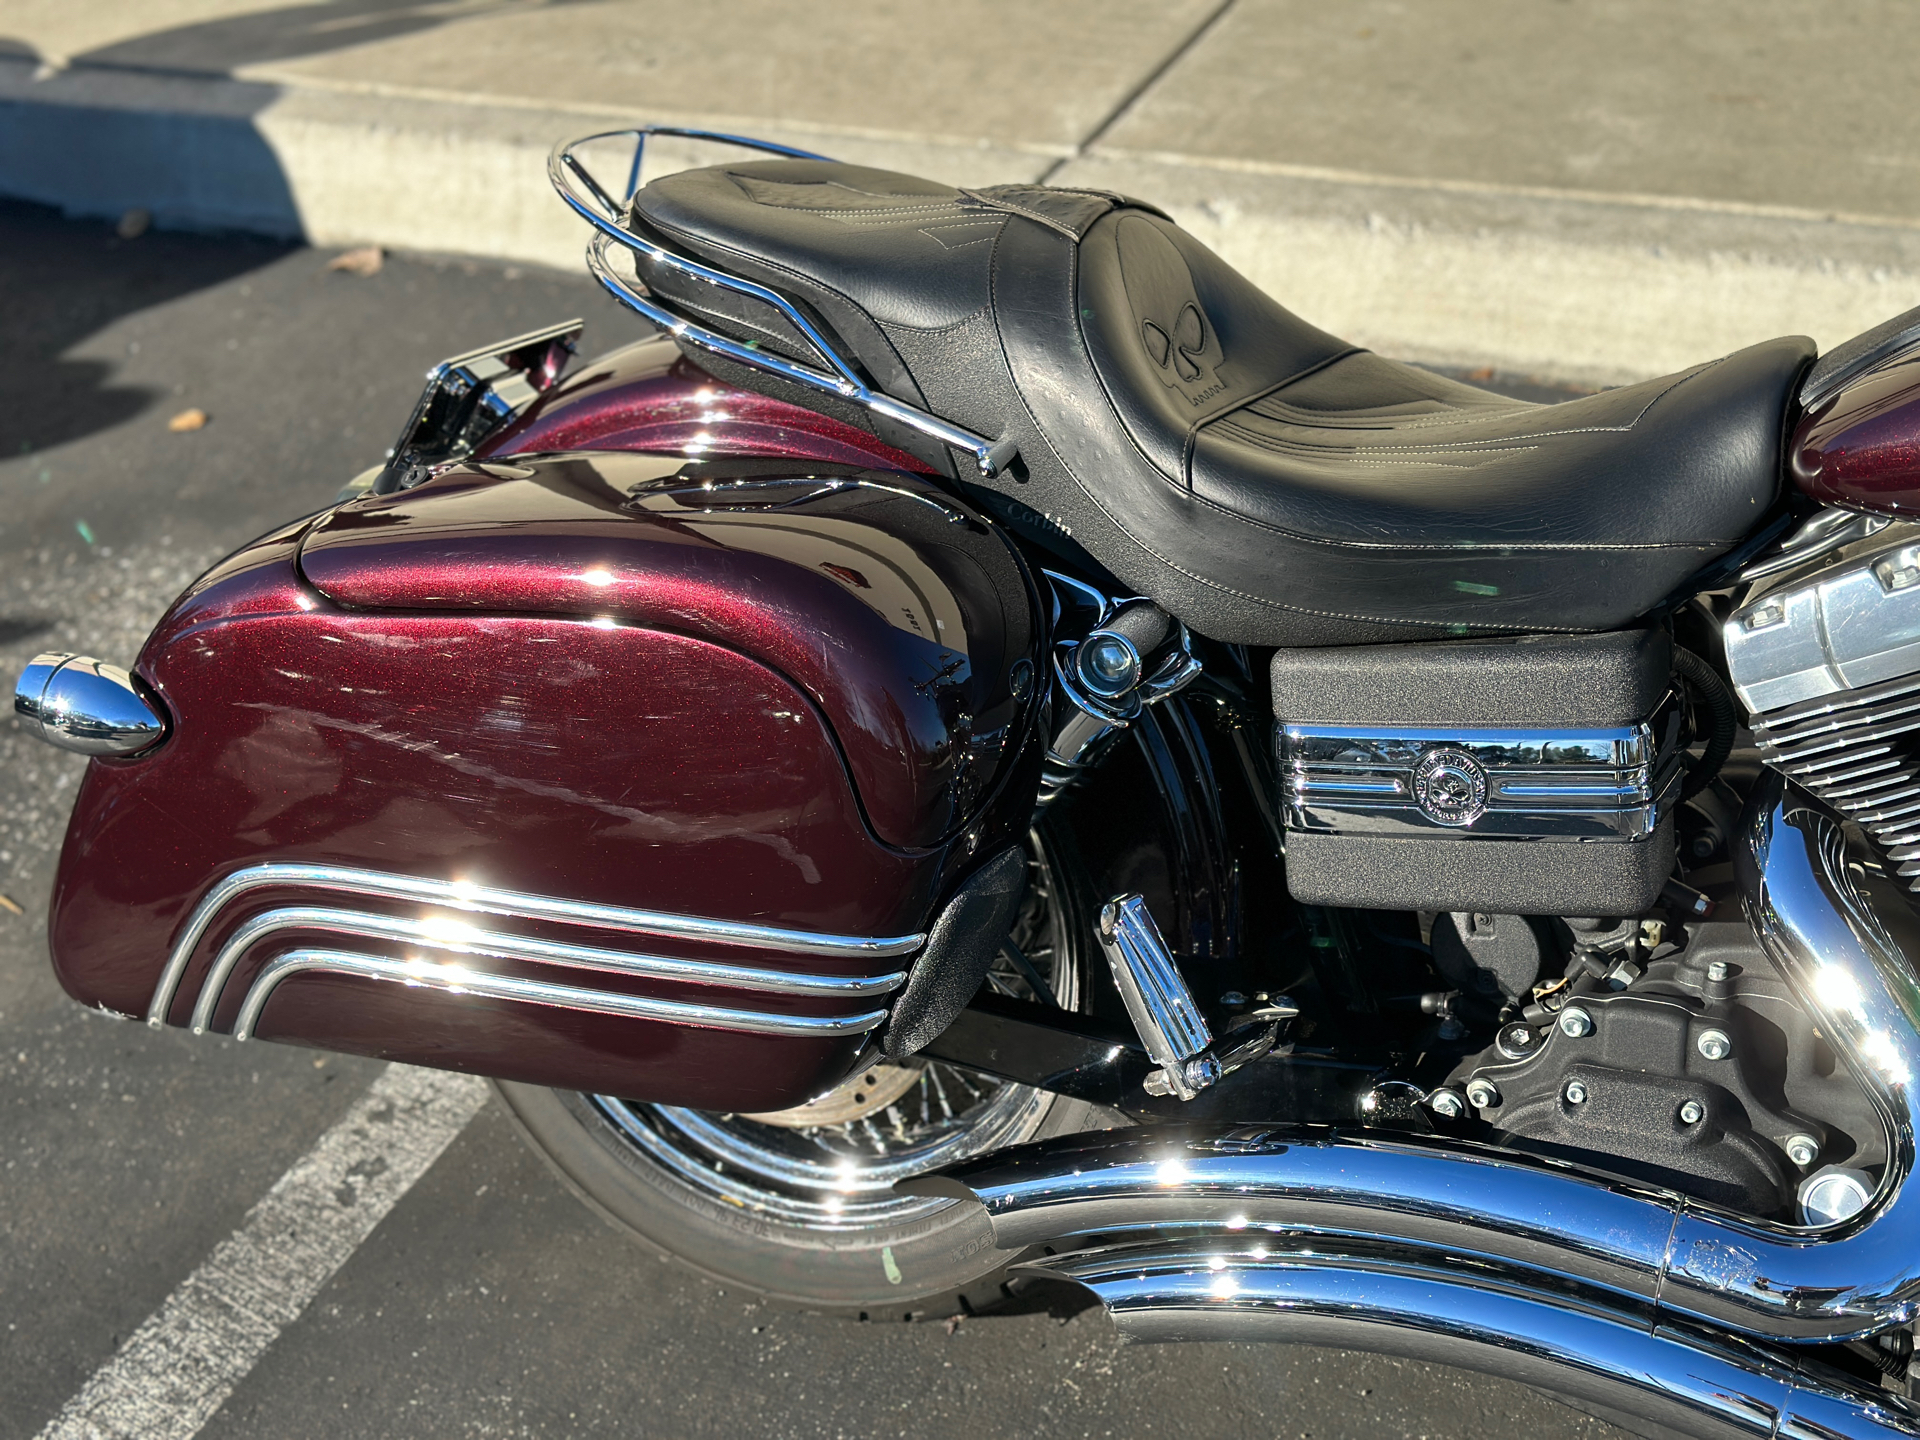 2006 Harley-Davidson Dyna™ Street Bob™ in San Jose, California - Photo 5